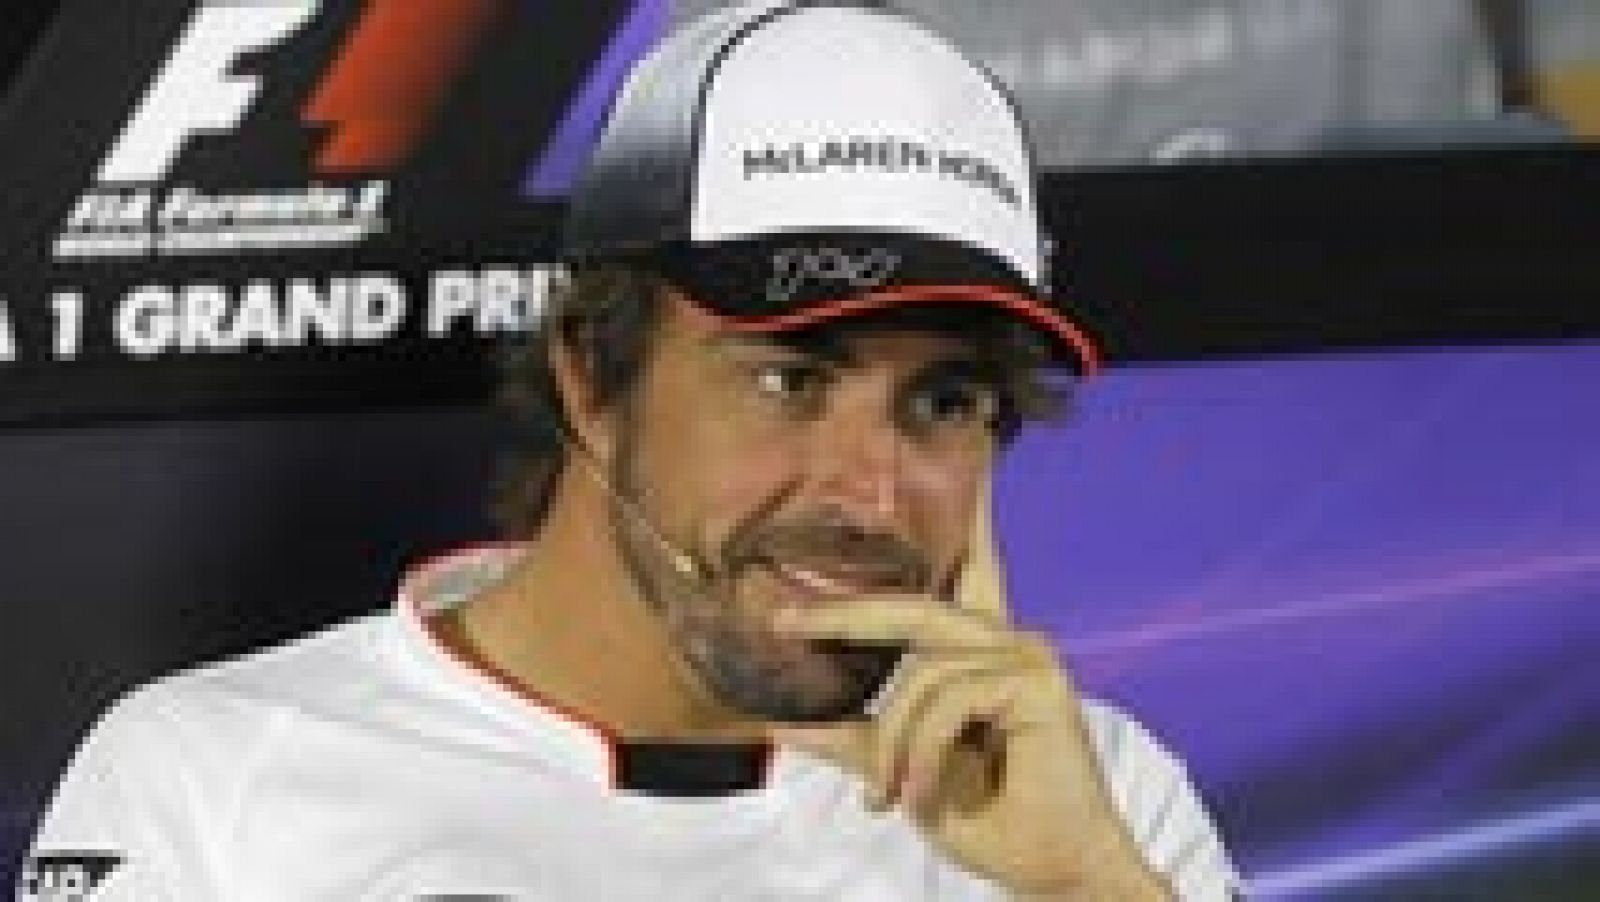 El máximo responsable de la escudería Mercedes, Toto Wolff, ha explicado que Fernando Alonso está en su lista de aspirantes para sustituir a Nico Rosberg, pero ha recordado que "ahora mismo tiene contrato con McLaren-Honda".